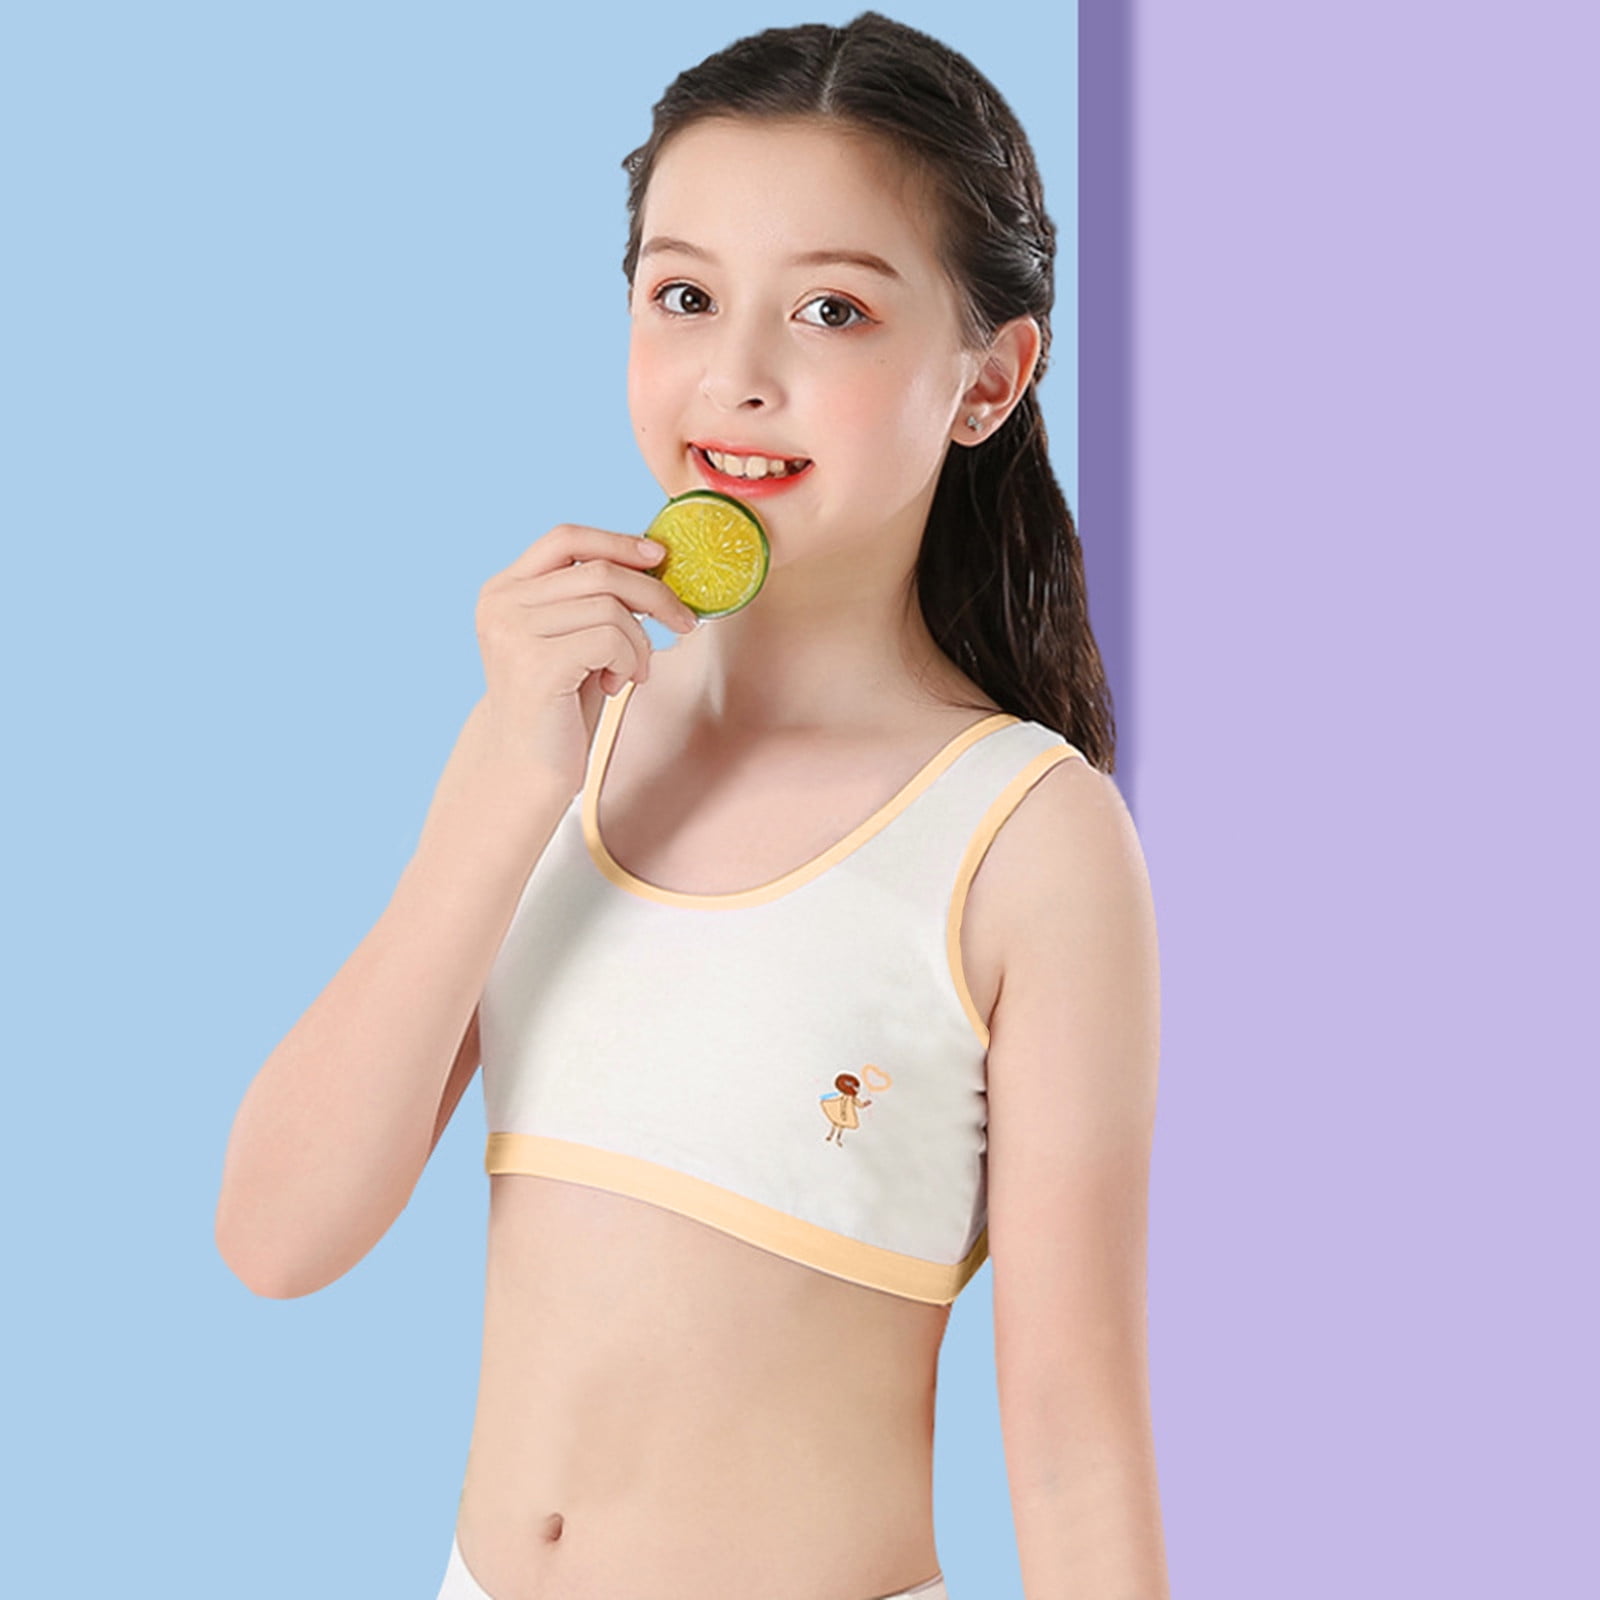 USA Pro Kids Girls Disney Crop Top Sports Bra Underwear 